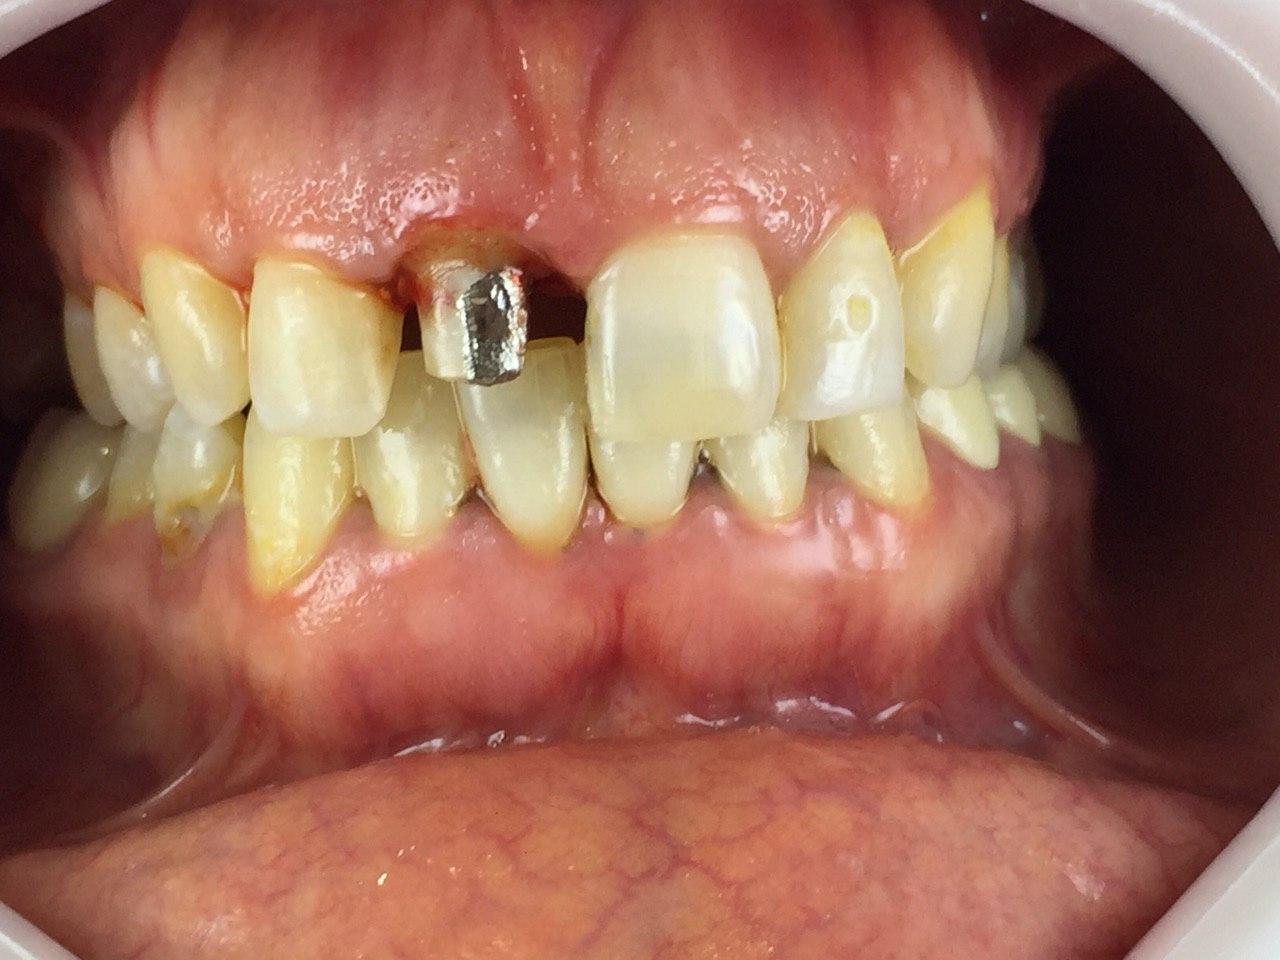 ترمیم و بازسازی دندان